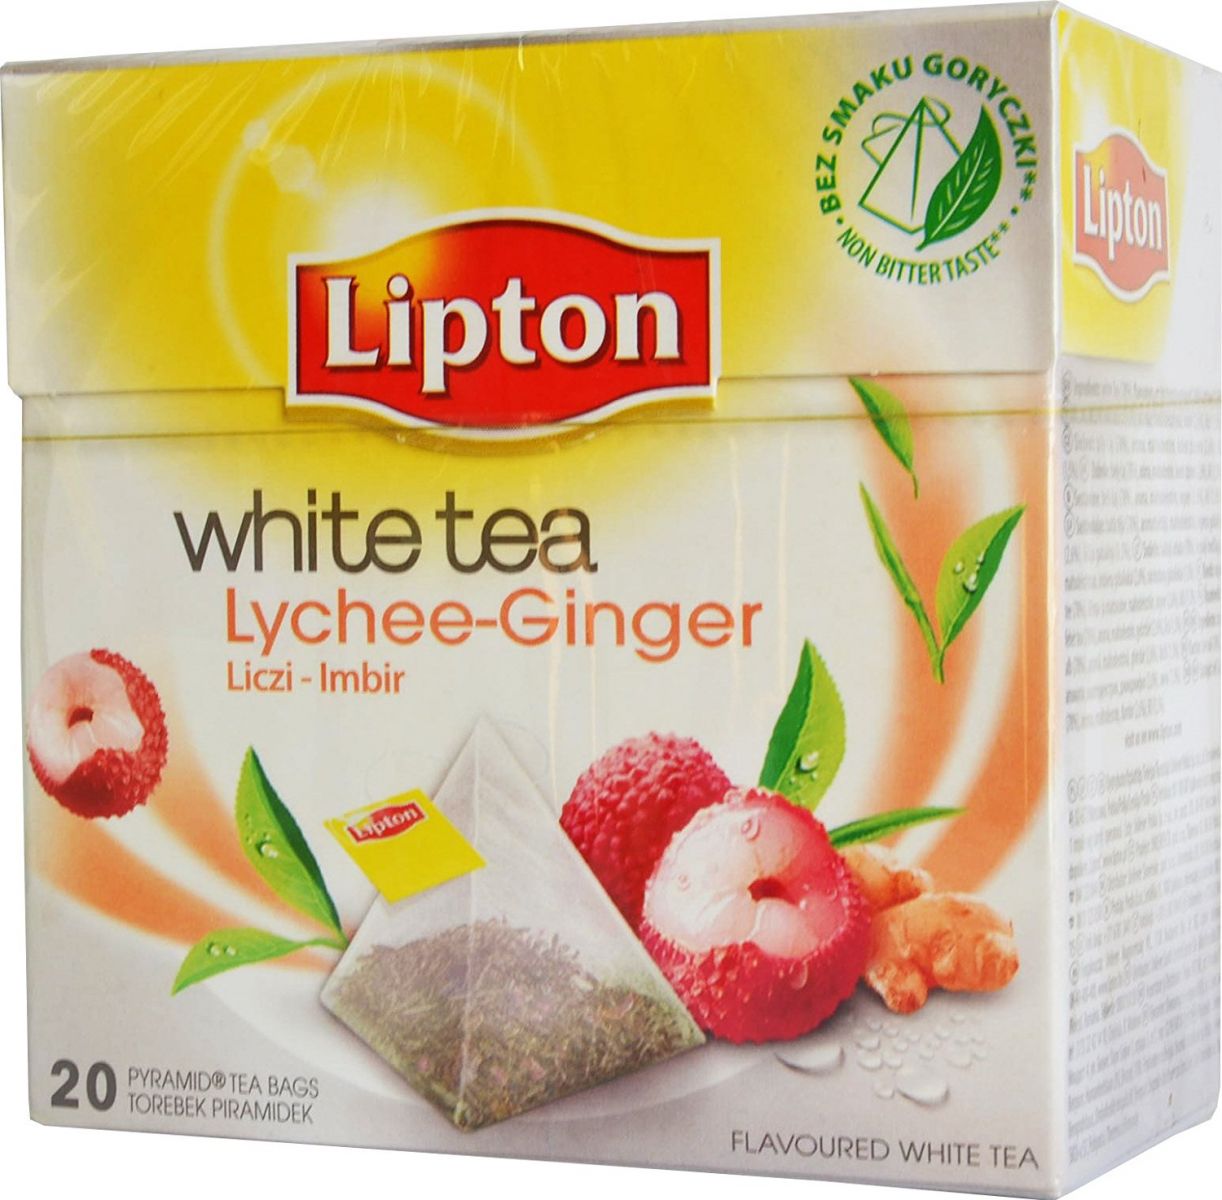 Белый липтон. Липтон White Tea. Липтон белый чай в пирамидках. Липтон белый чай 2008. Lipton White Tea Pomegranate.